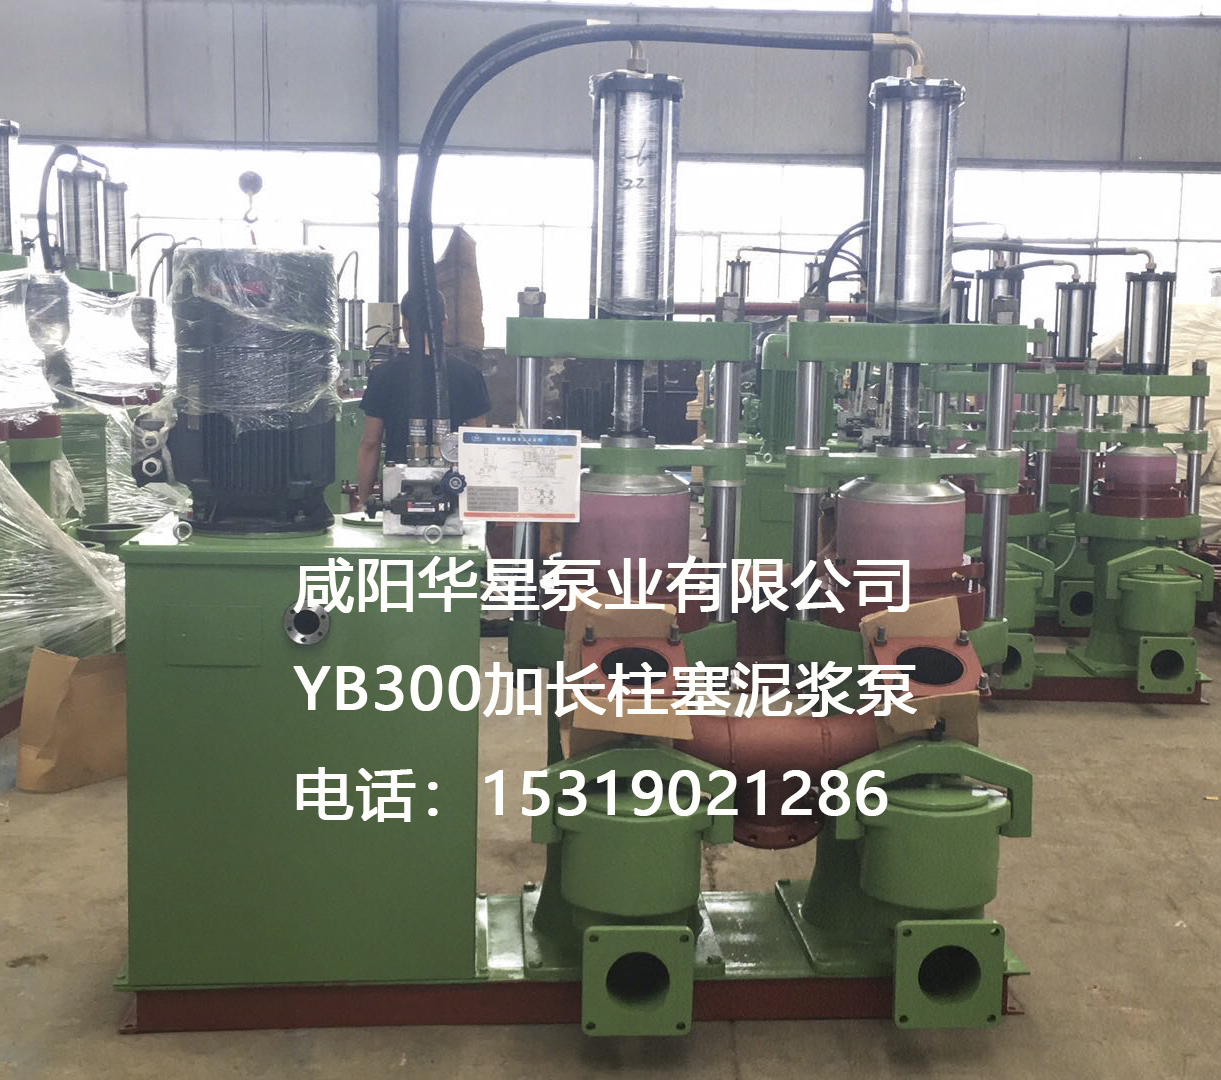 YB300加長液壓陶瓷柱塞泵